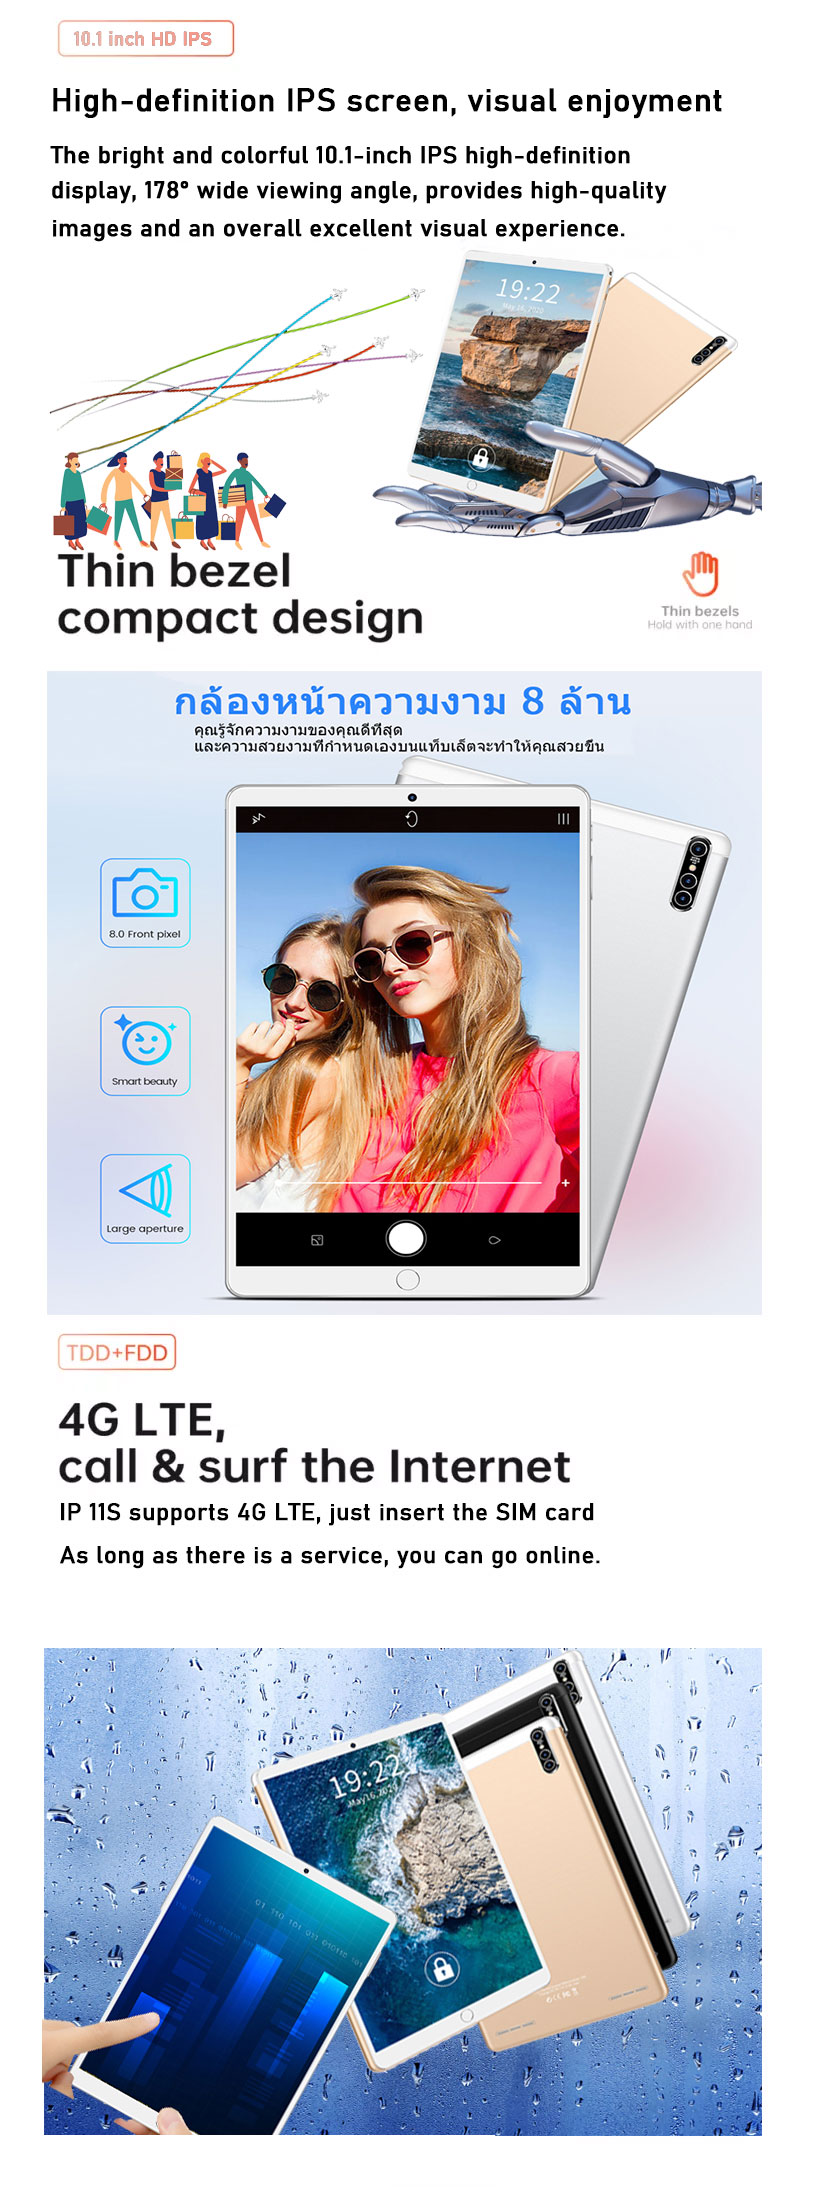 เกี่ยวกับสินค้า Realmi Thailand Center แท็บเล็ตหน้าจอใหญ่ 10.1 นิ้ว แท็บเล็ตอัจฉริยะ 2-in-1 หน่วยความจำ 8+128GB กล้อง 13MP+24MP แบตเตอรี่ทนทานและจดจำลายนิ้วมือราคาไม่แพง การจดจำใบหน้ารองรับการใช้หน้าจอสัมผัสด้วยปากกา ประสบการณ์การเล่นเกมที่ราบรื่น รับประกัน 1 ปี